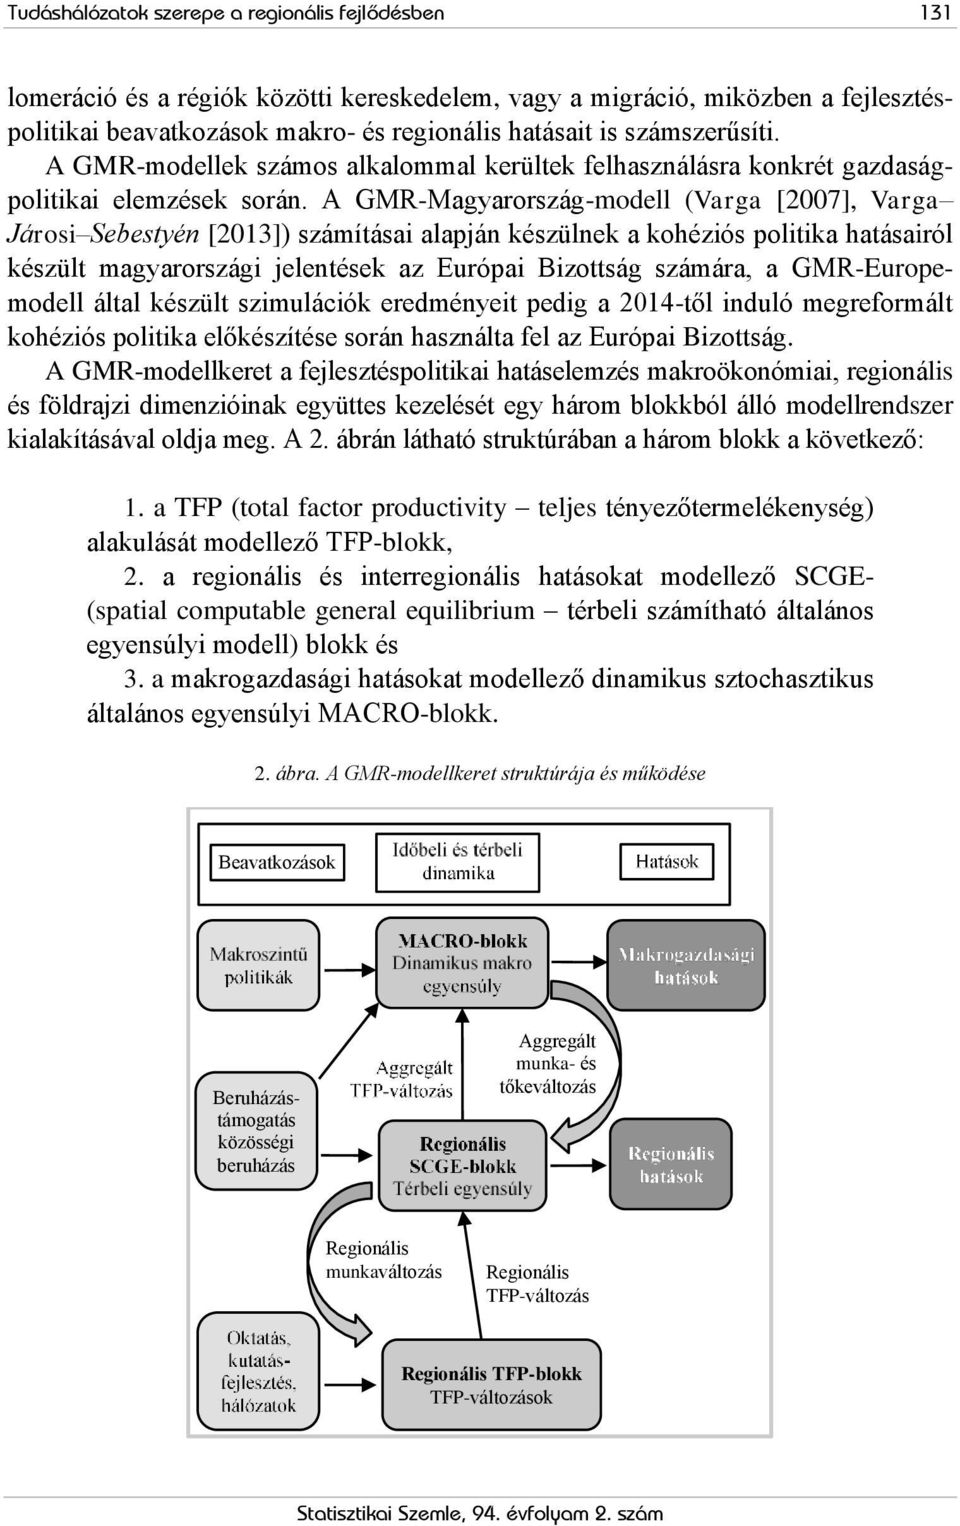 A GMR-Magyarország-modell (Varga [2007], Varga Járosi Sebestyén [2013]) számításai alapján készülnek a kohéziós politika hatásairól készült magyarországi jelentések az Európai Bizottság számára, a